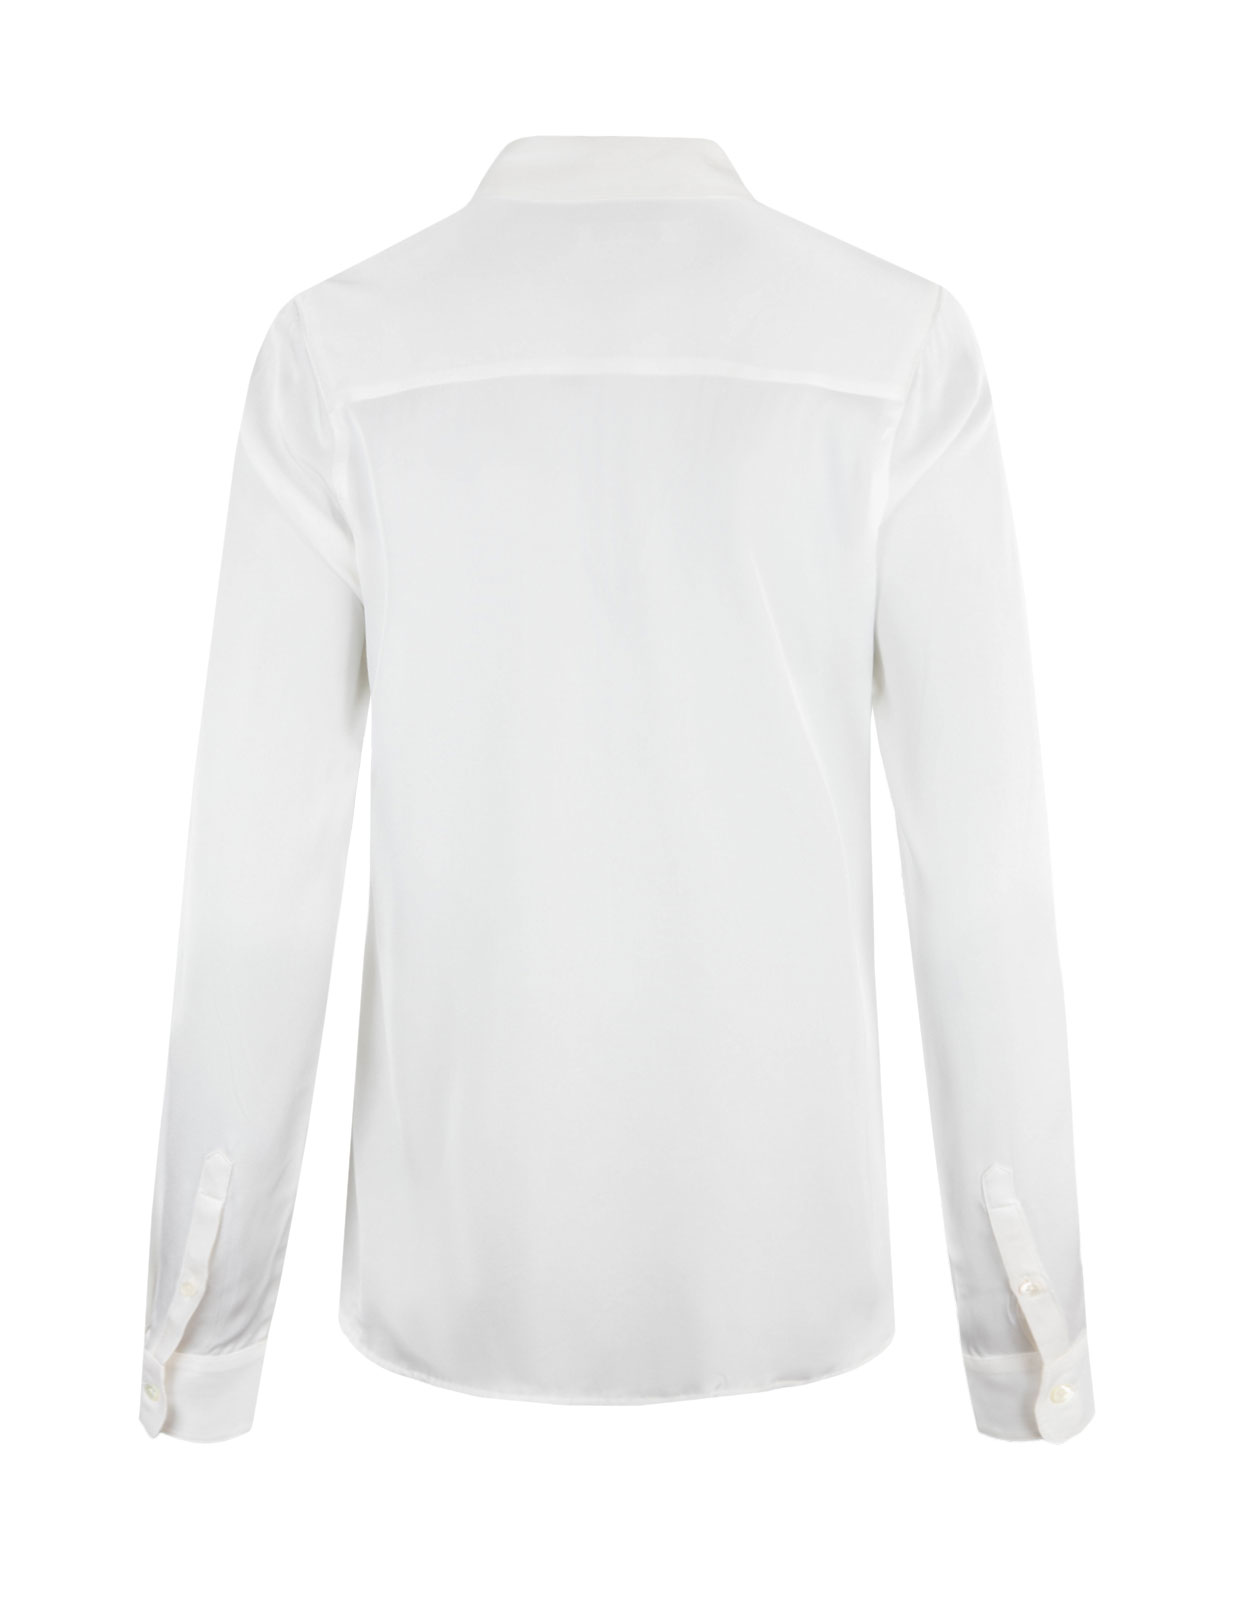 Susan Silk Shirt Offwhite Stl 42